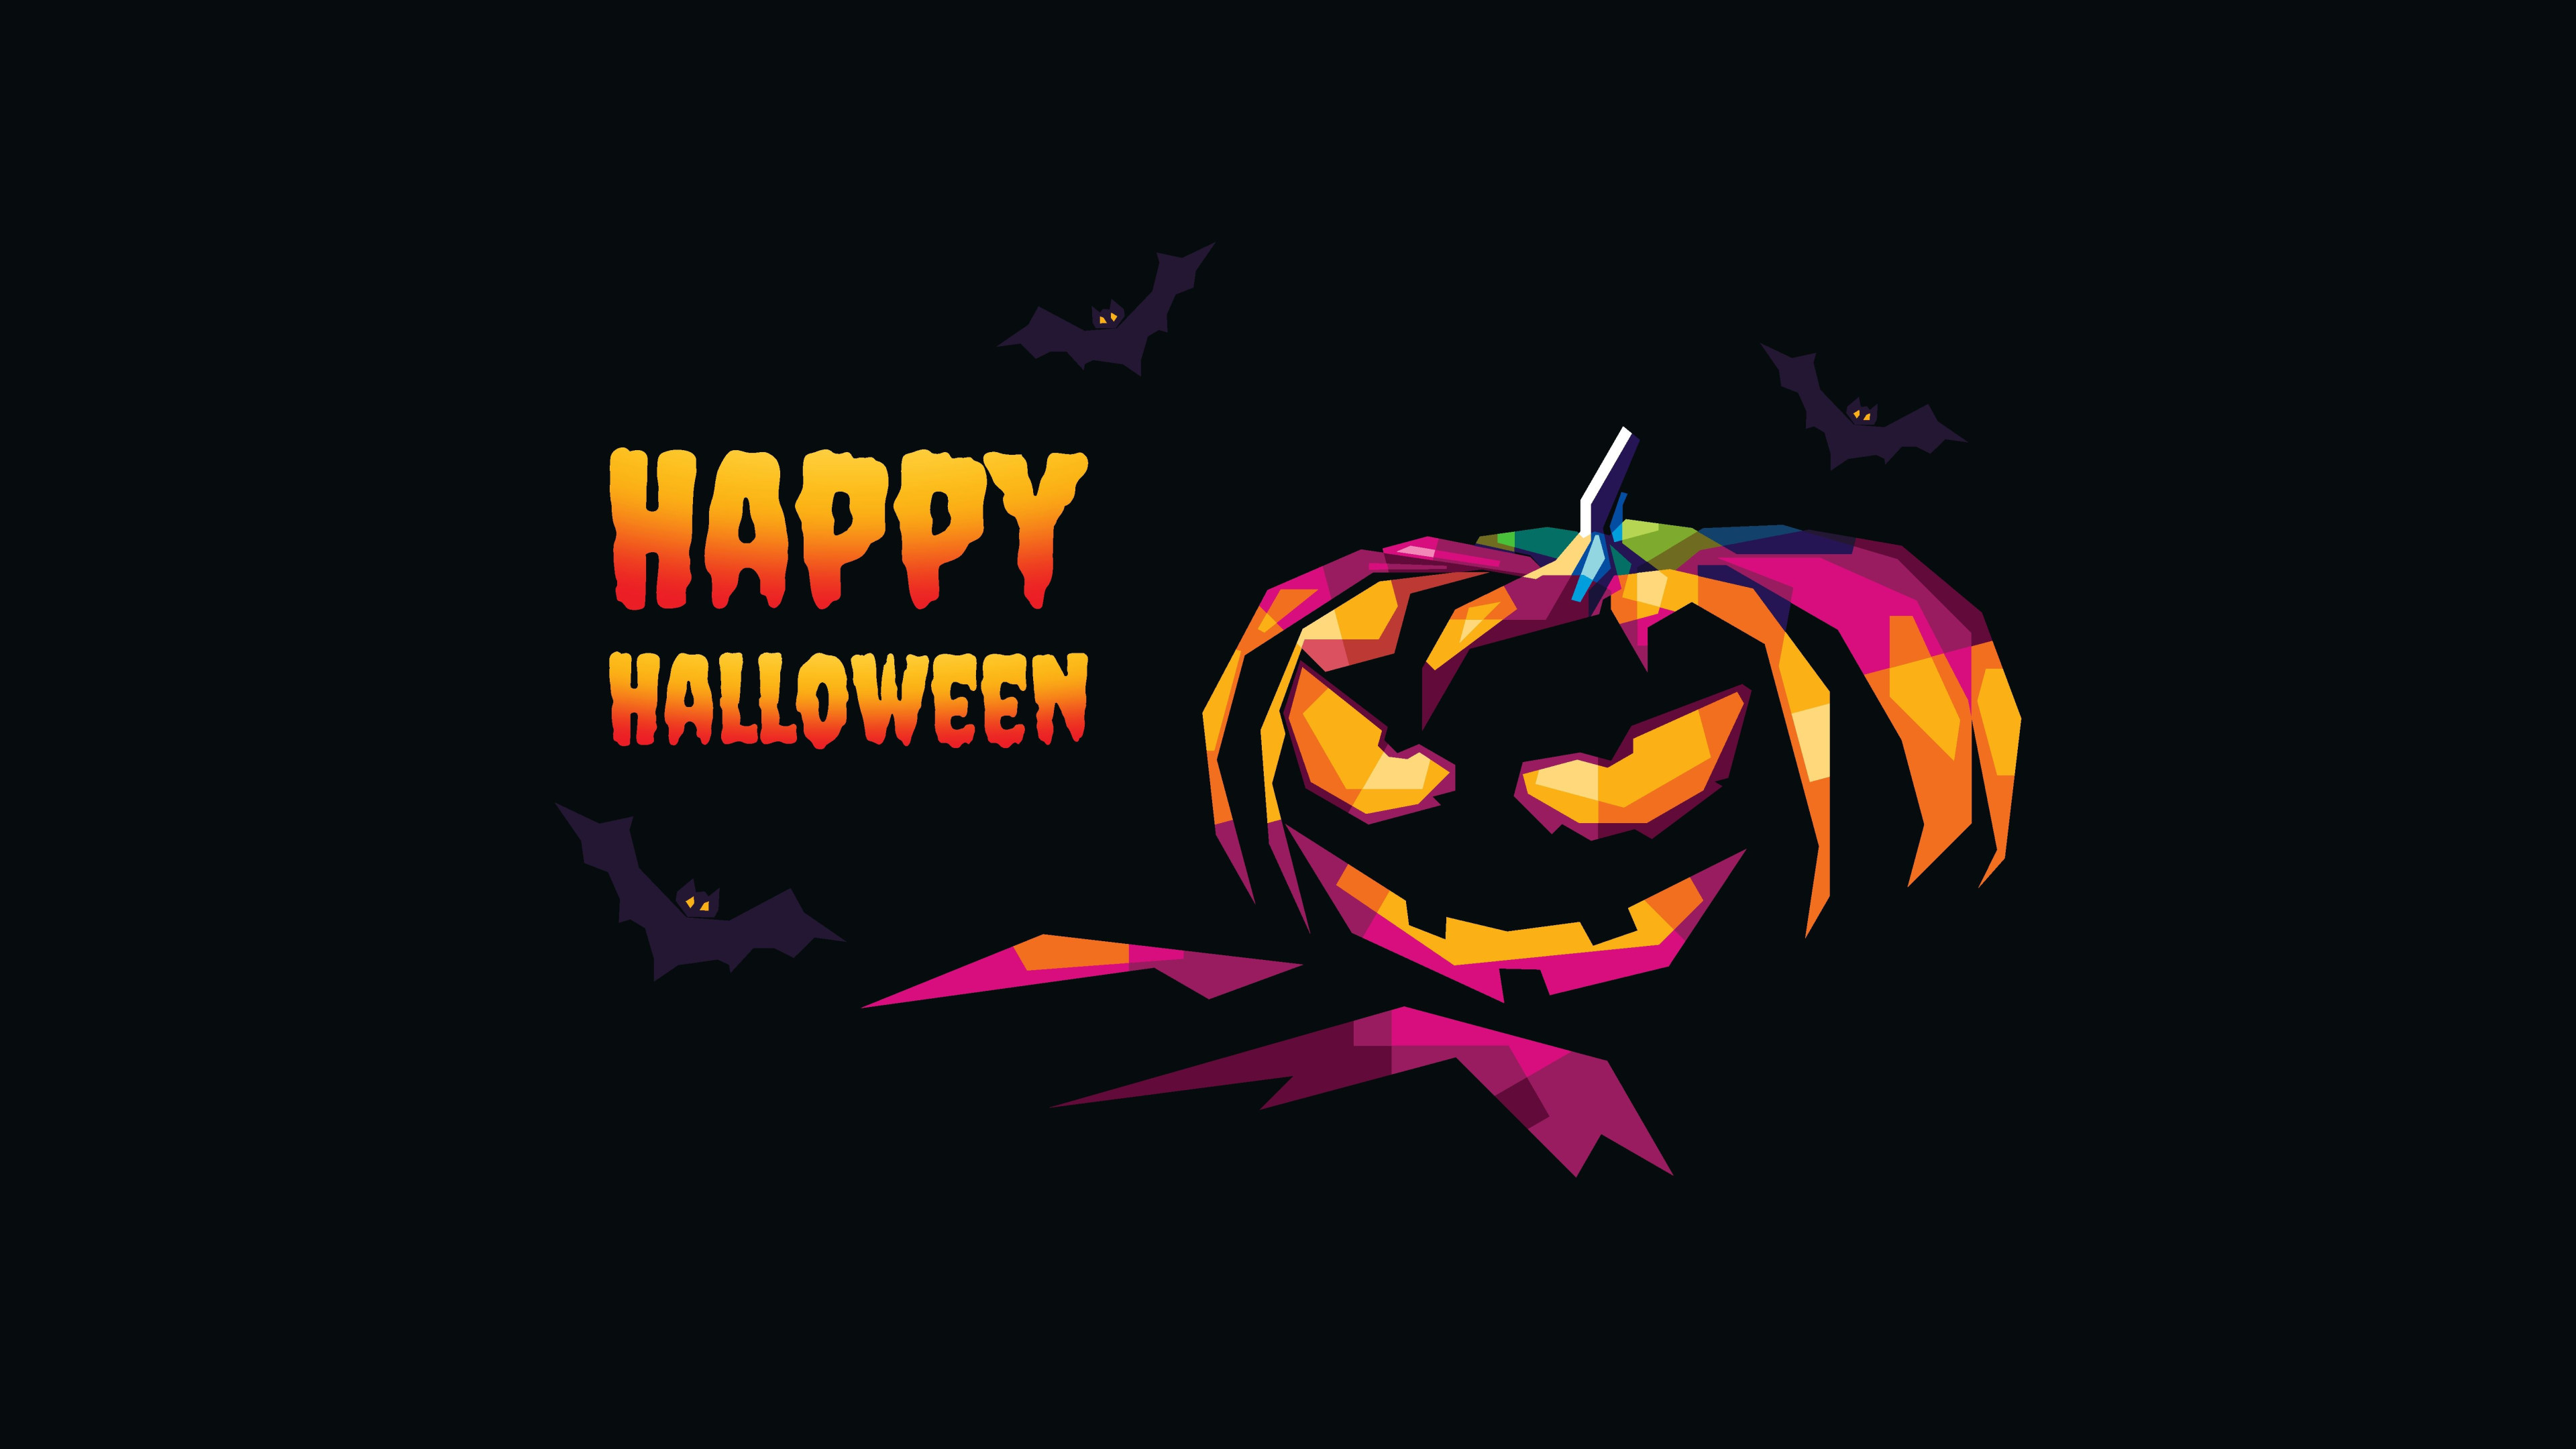 Happy Halloween Wallpaper 4K, Halloween Pumpkin, Celebrations/Halloween,  #8882